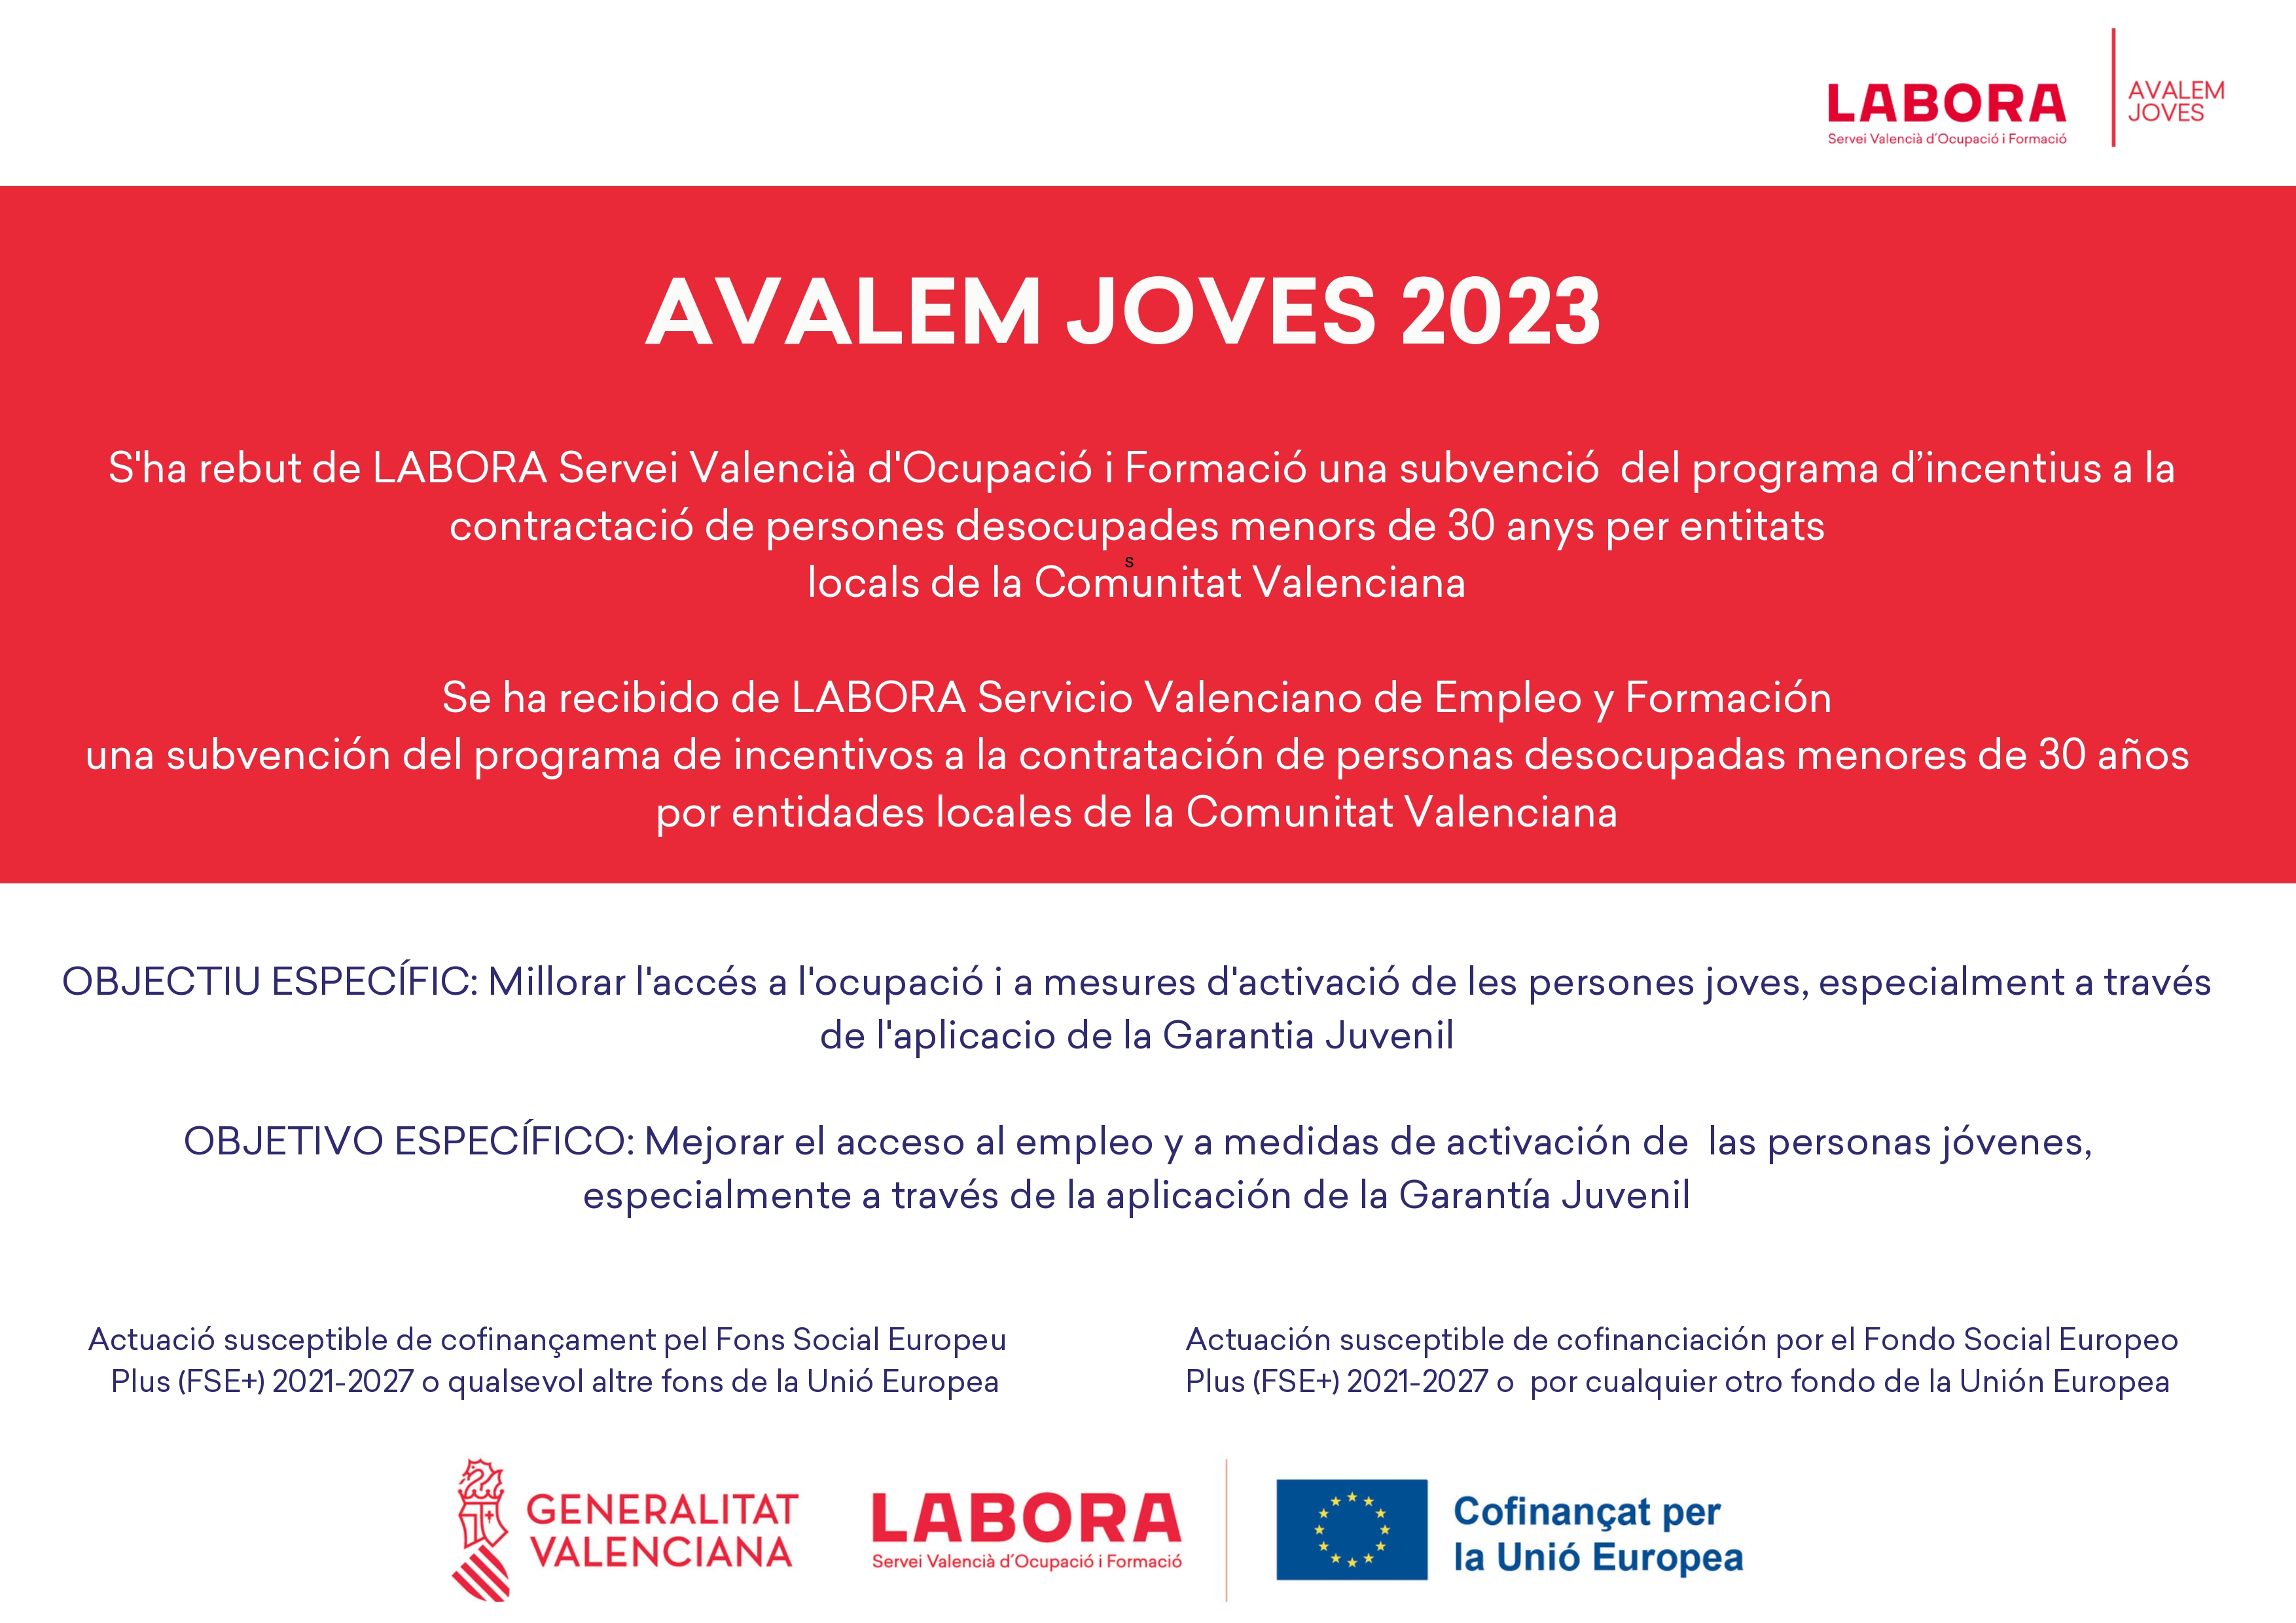 Inicio del programa de subvenciones de empleo para la contratación de personas desempleadas menores de 30 años por entidades locales de la Comunidad Valenciana (Avalem Joves)